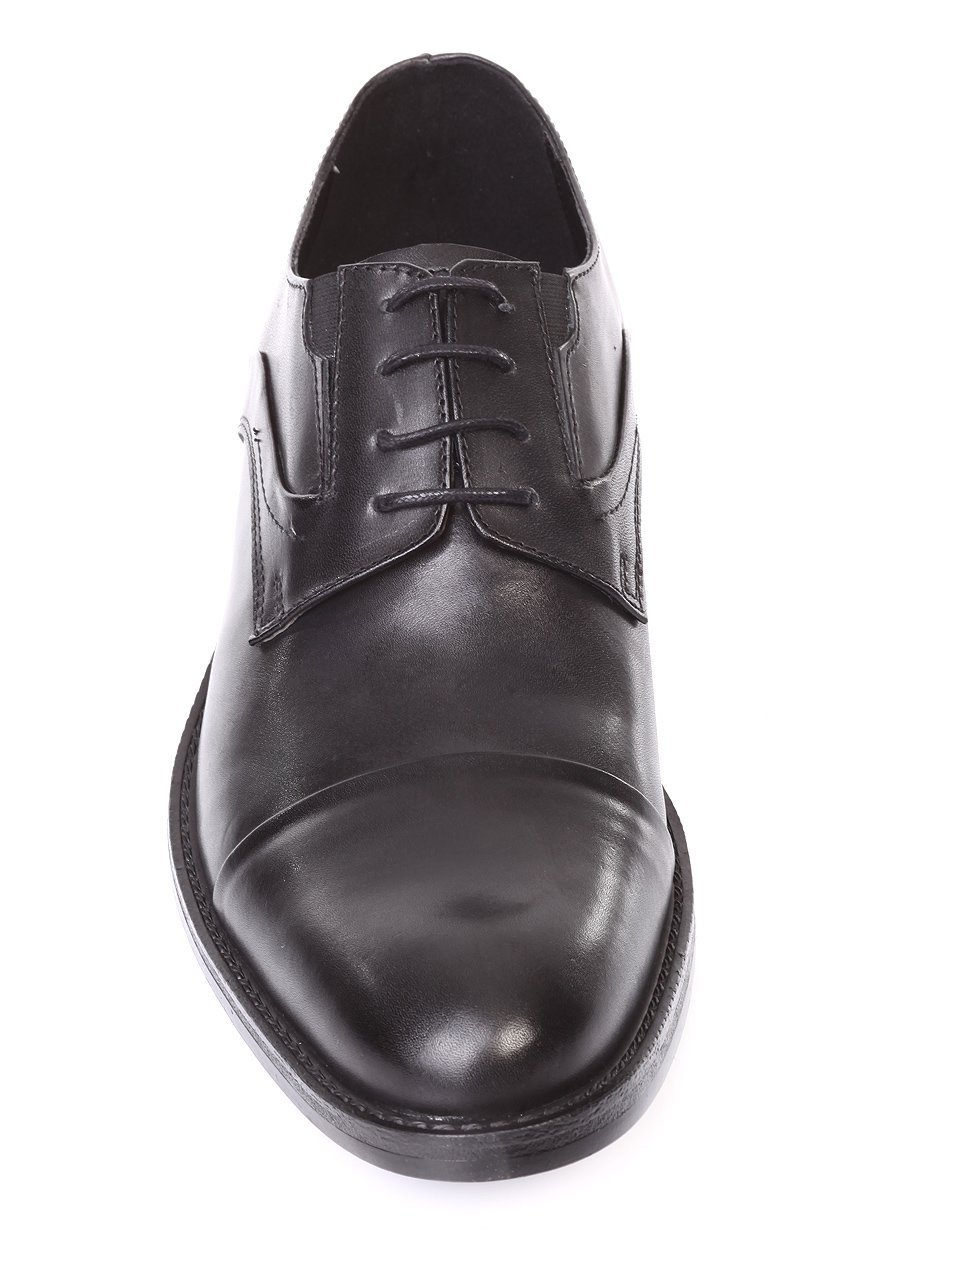 Елегантни мъжки обувки от естествена кожа 7AB-171098 black